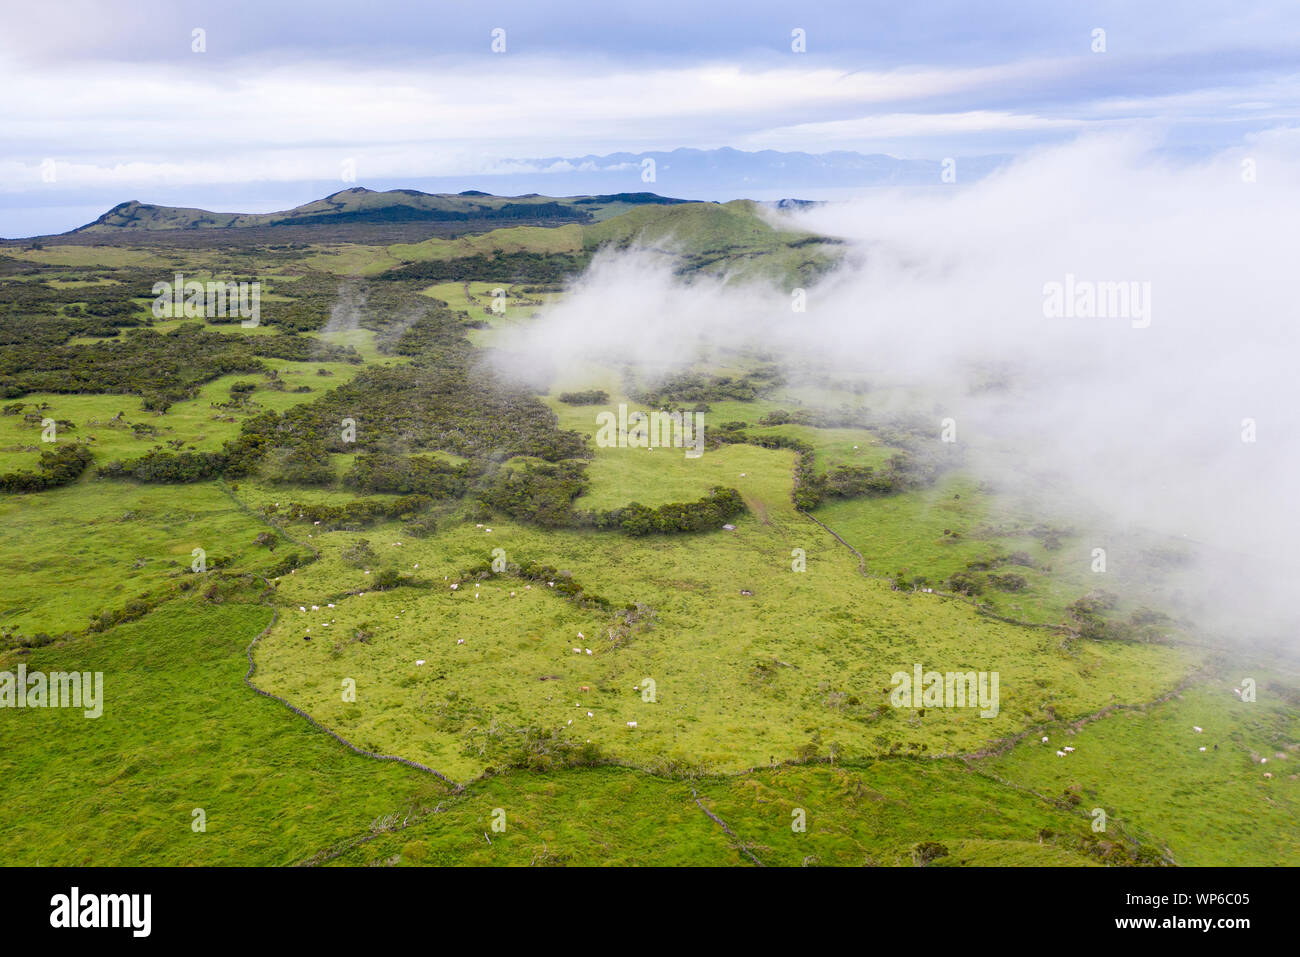 Imagen aérea del paisaje volcánico típico caldeira con conos de volcán de Planalto da Achada meseta central de Ilha do Pico Island, Azores Foto de stock